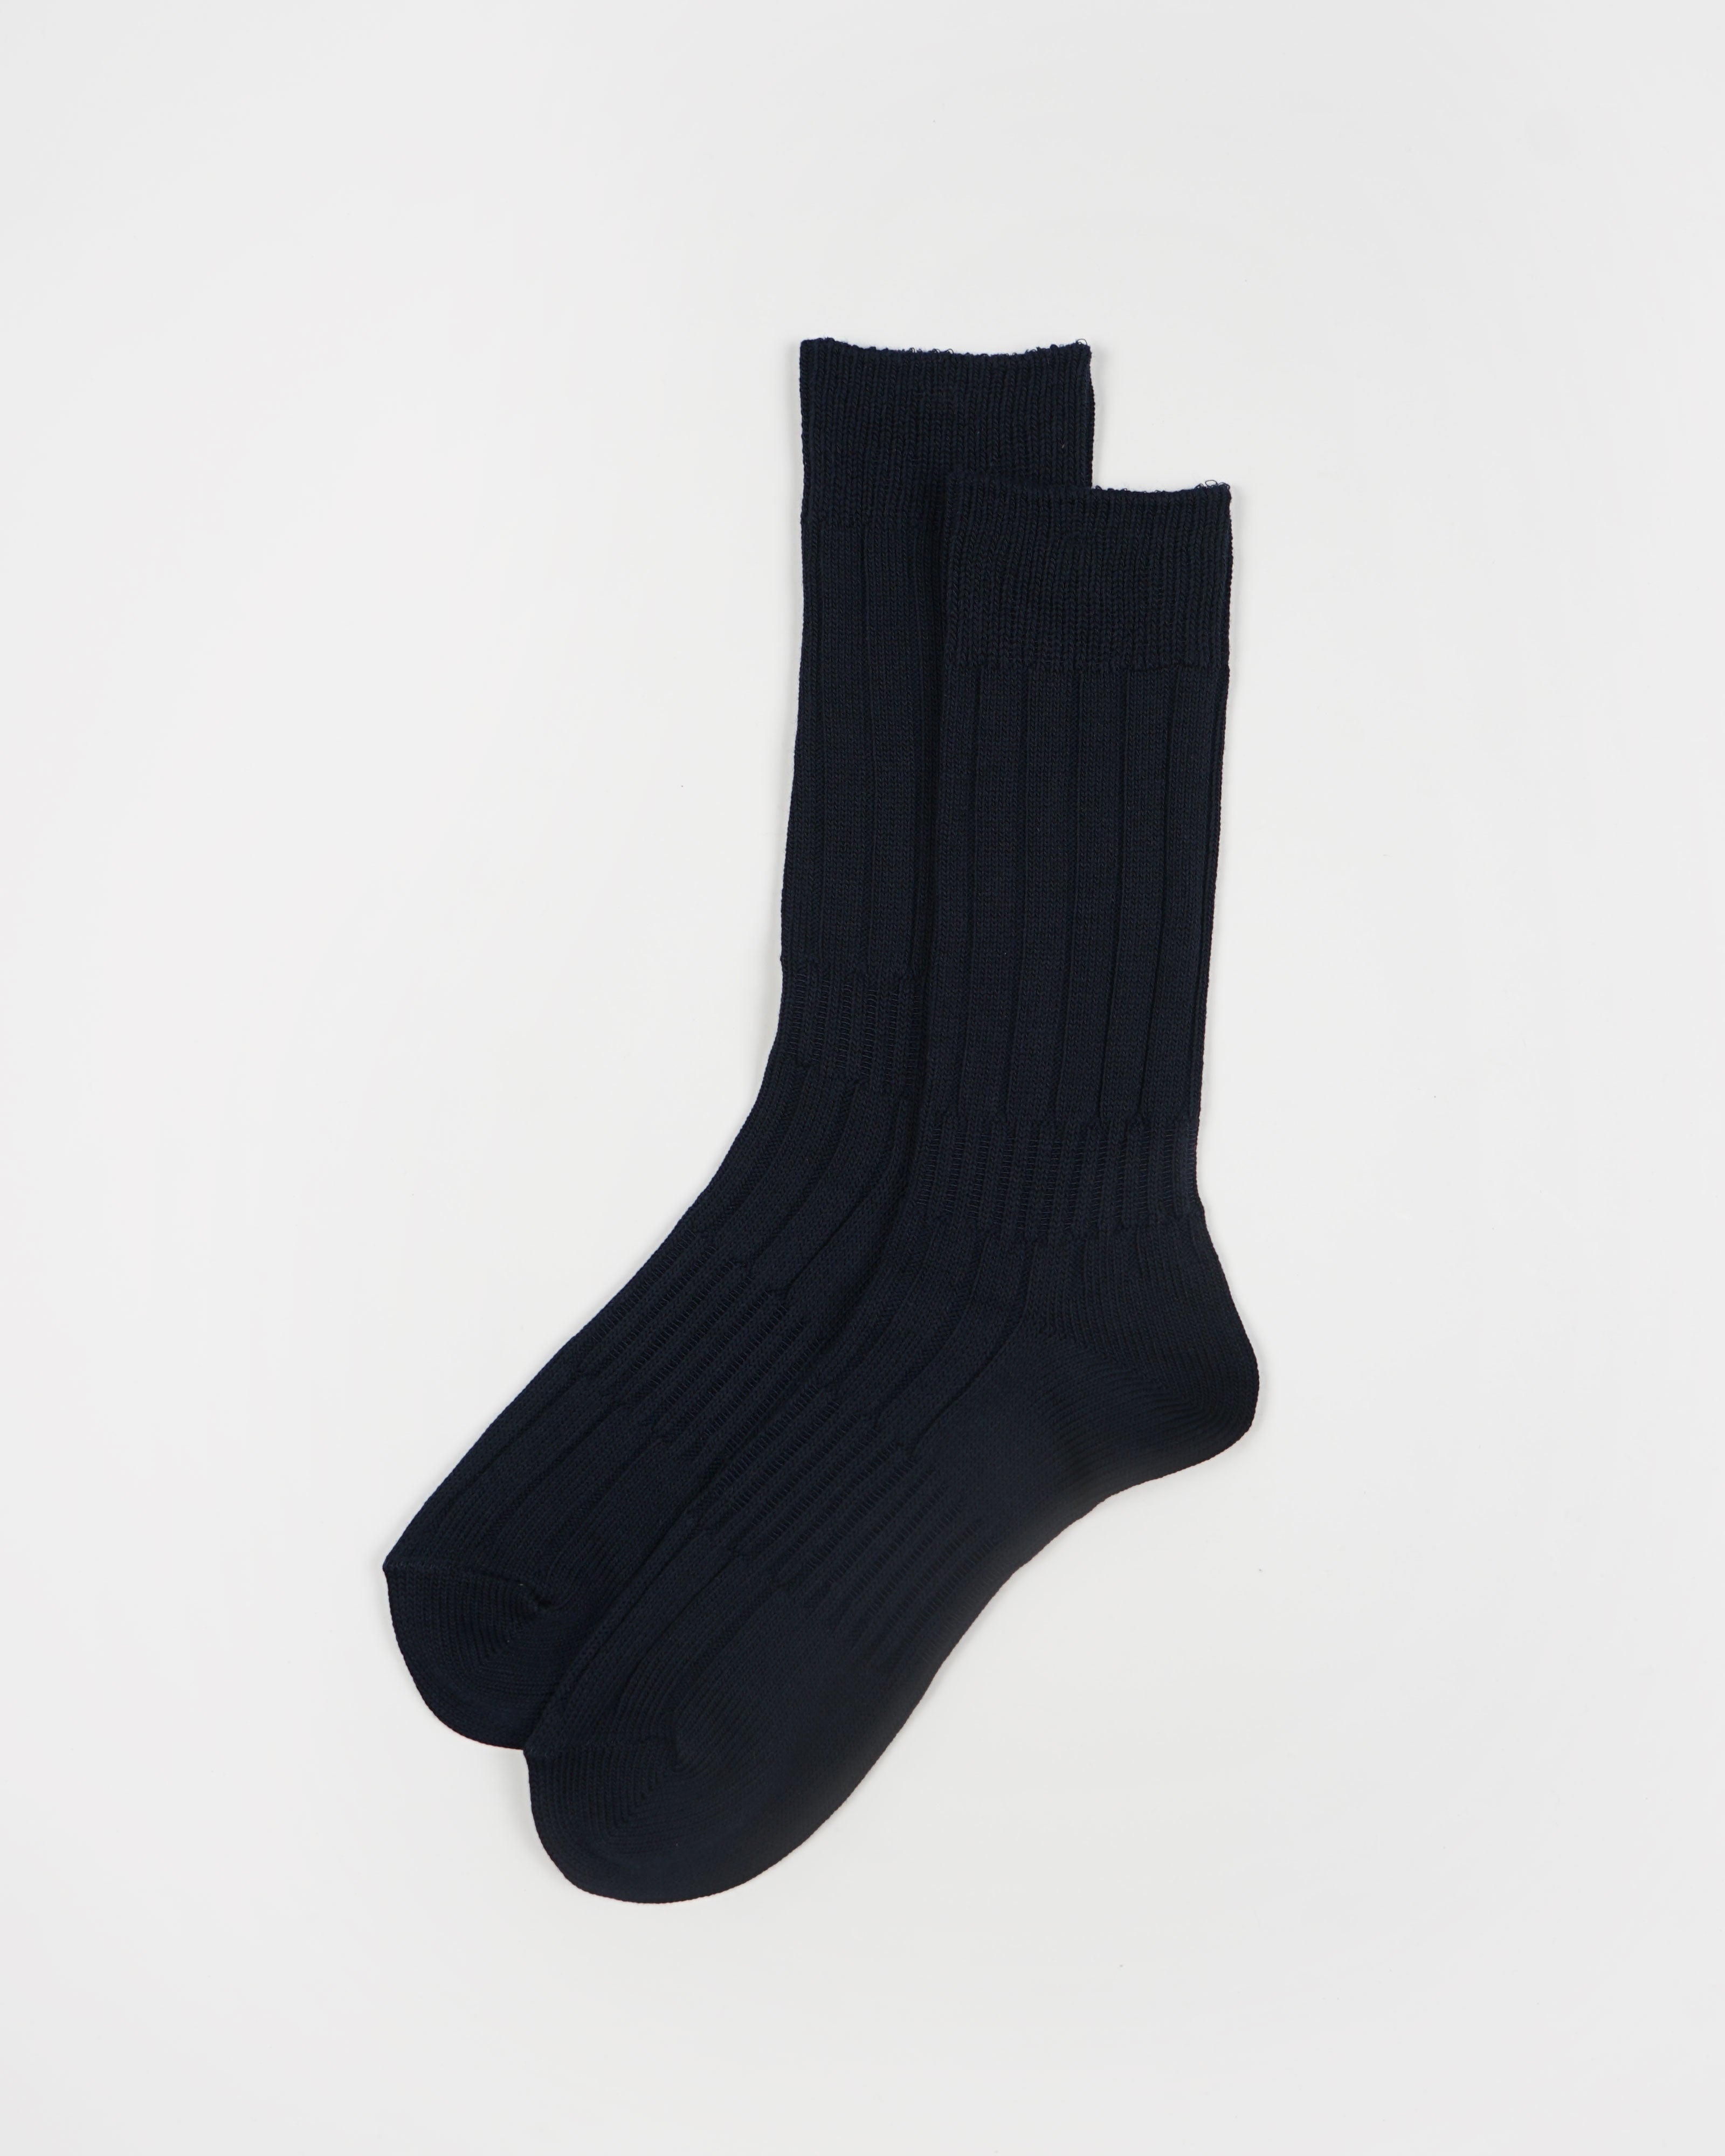 Outlast Hiker Socks / Navy